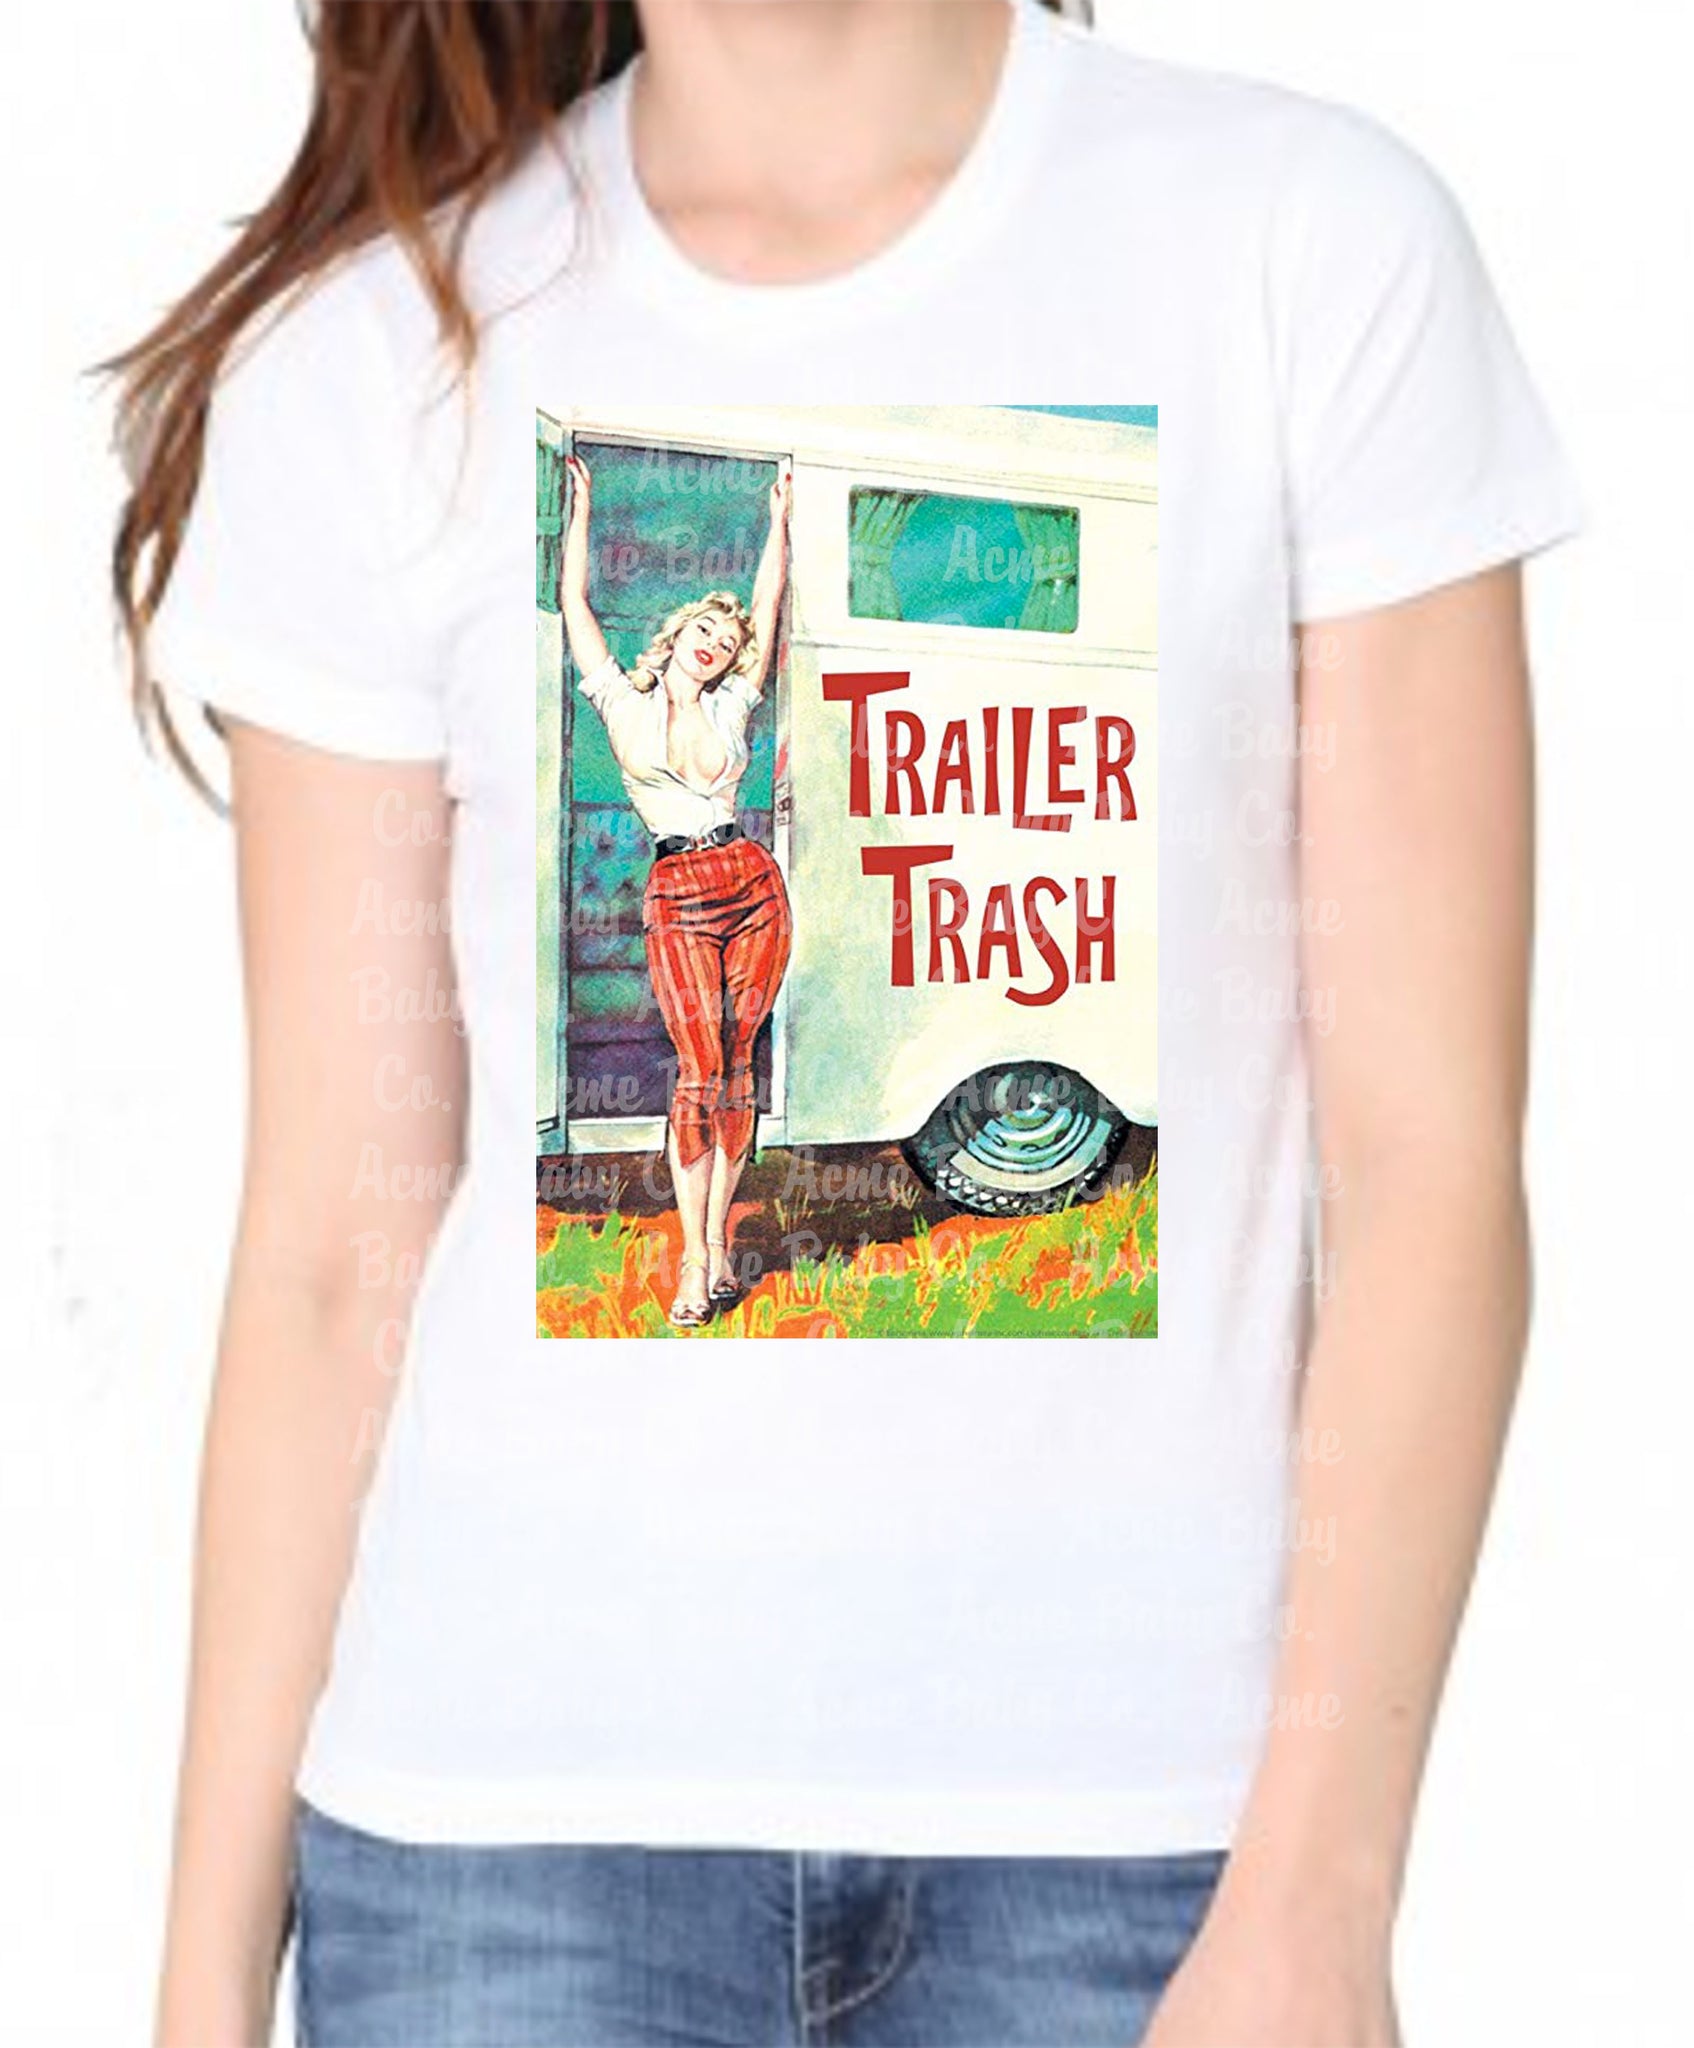 Trailer Trash Organic Women's Shirt